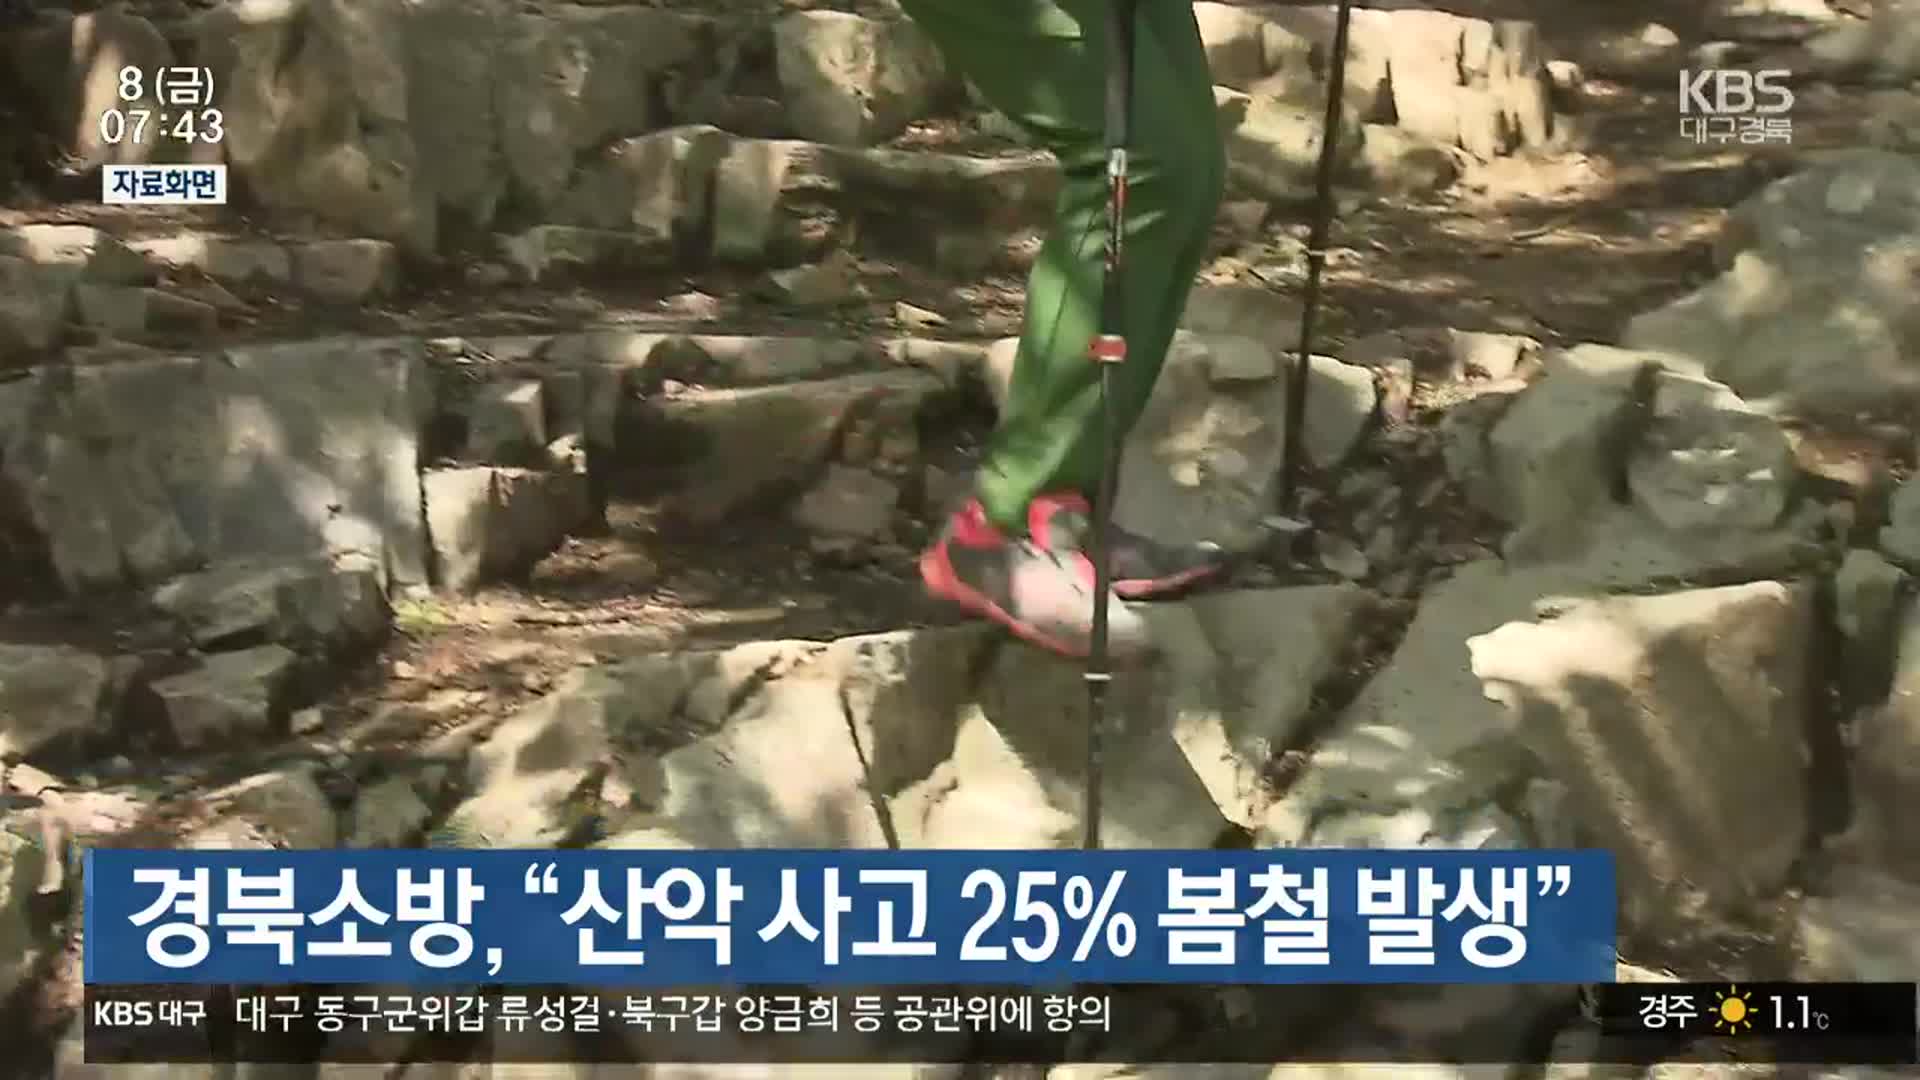 경북소방 “산악 사고 25% 봄철 발생”